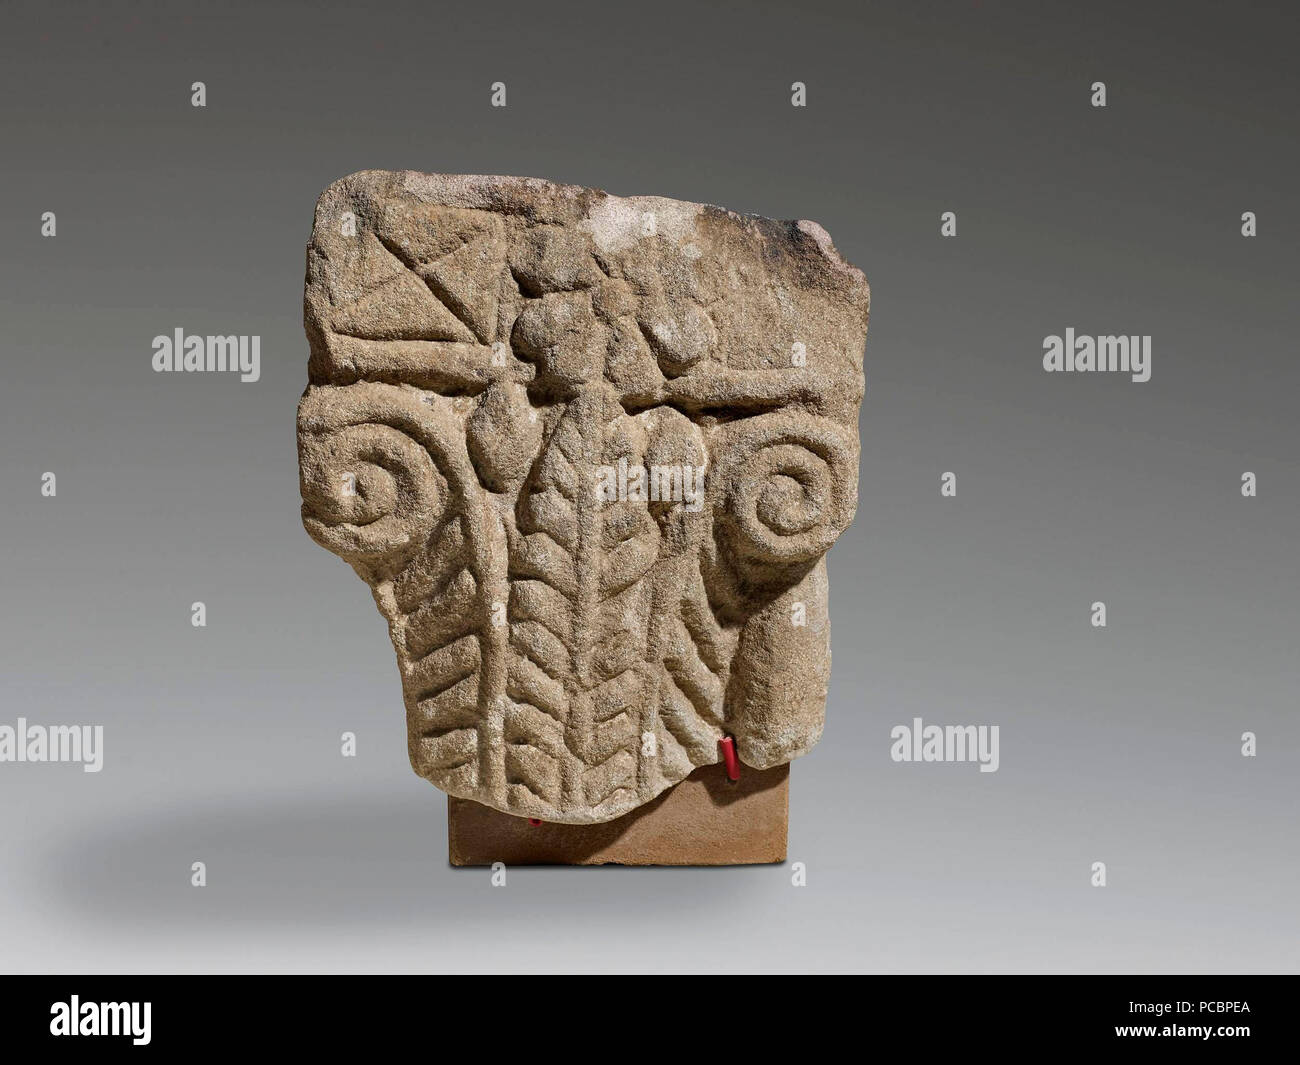 23 Górny fragment węgara z dekoracją w formie kapitelu, warsztat nubijski Stock Photo